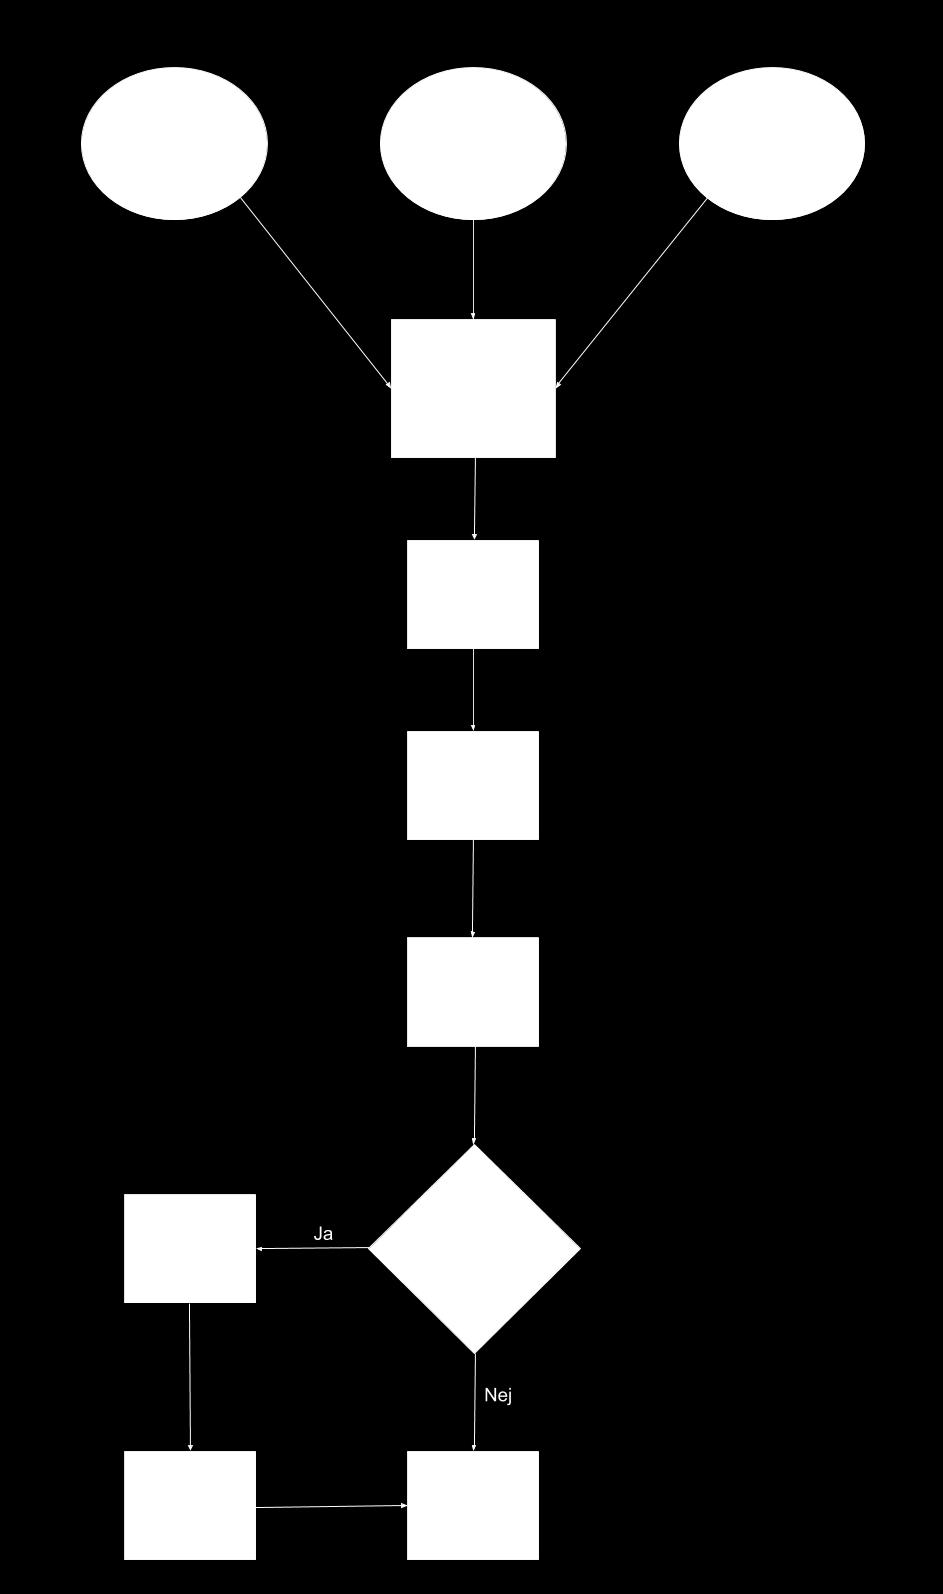 Bilaga 2 I Figur 9 visas ett flödesschema över arbetsprocessen författarna använde sig